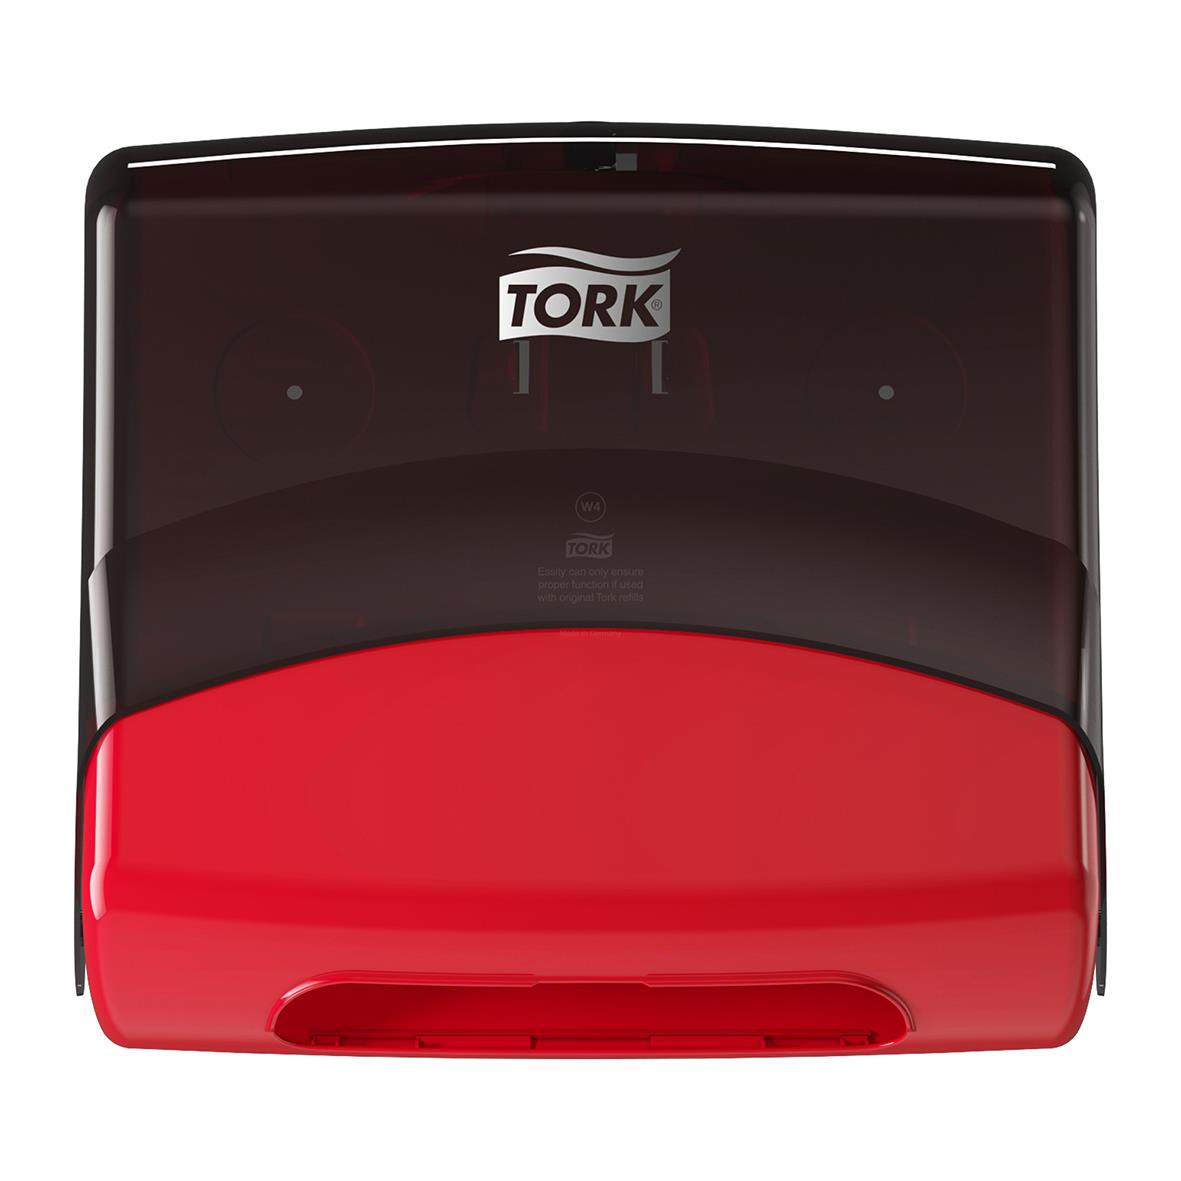 Dispenser Rengöringsduk Tork W4 Top Pack röd/svart 50250069_1